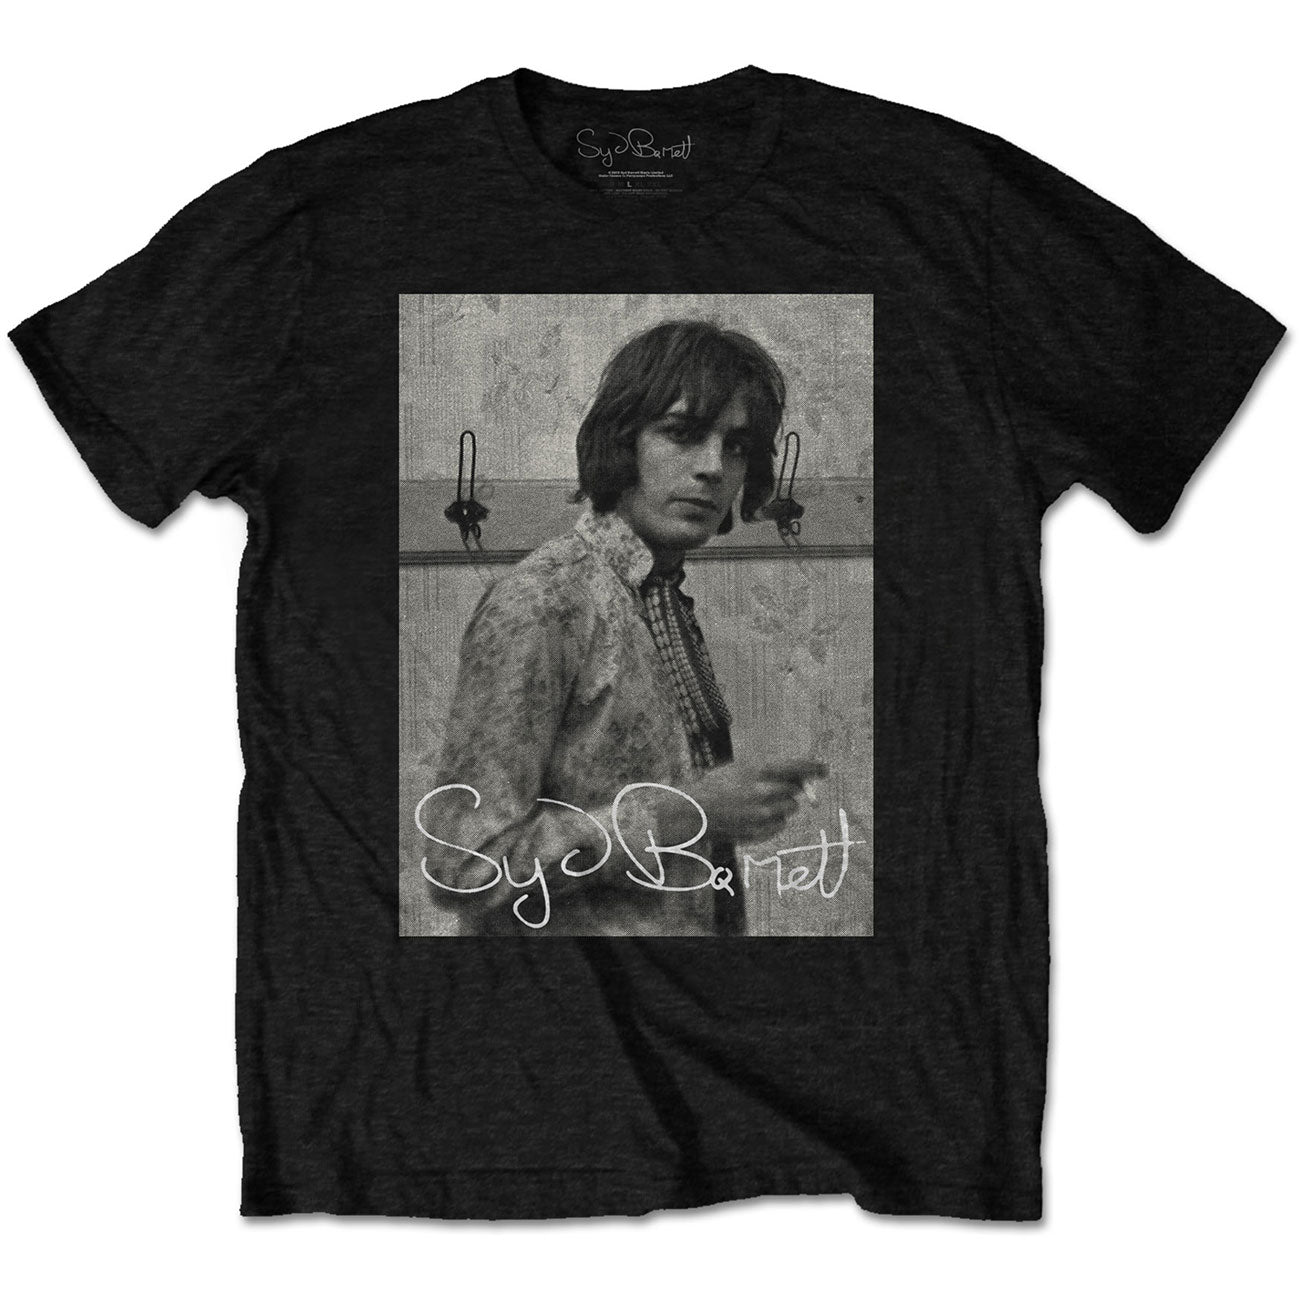 Syd Barrett T-Shirt: Smoking